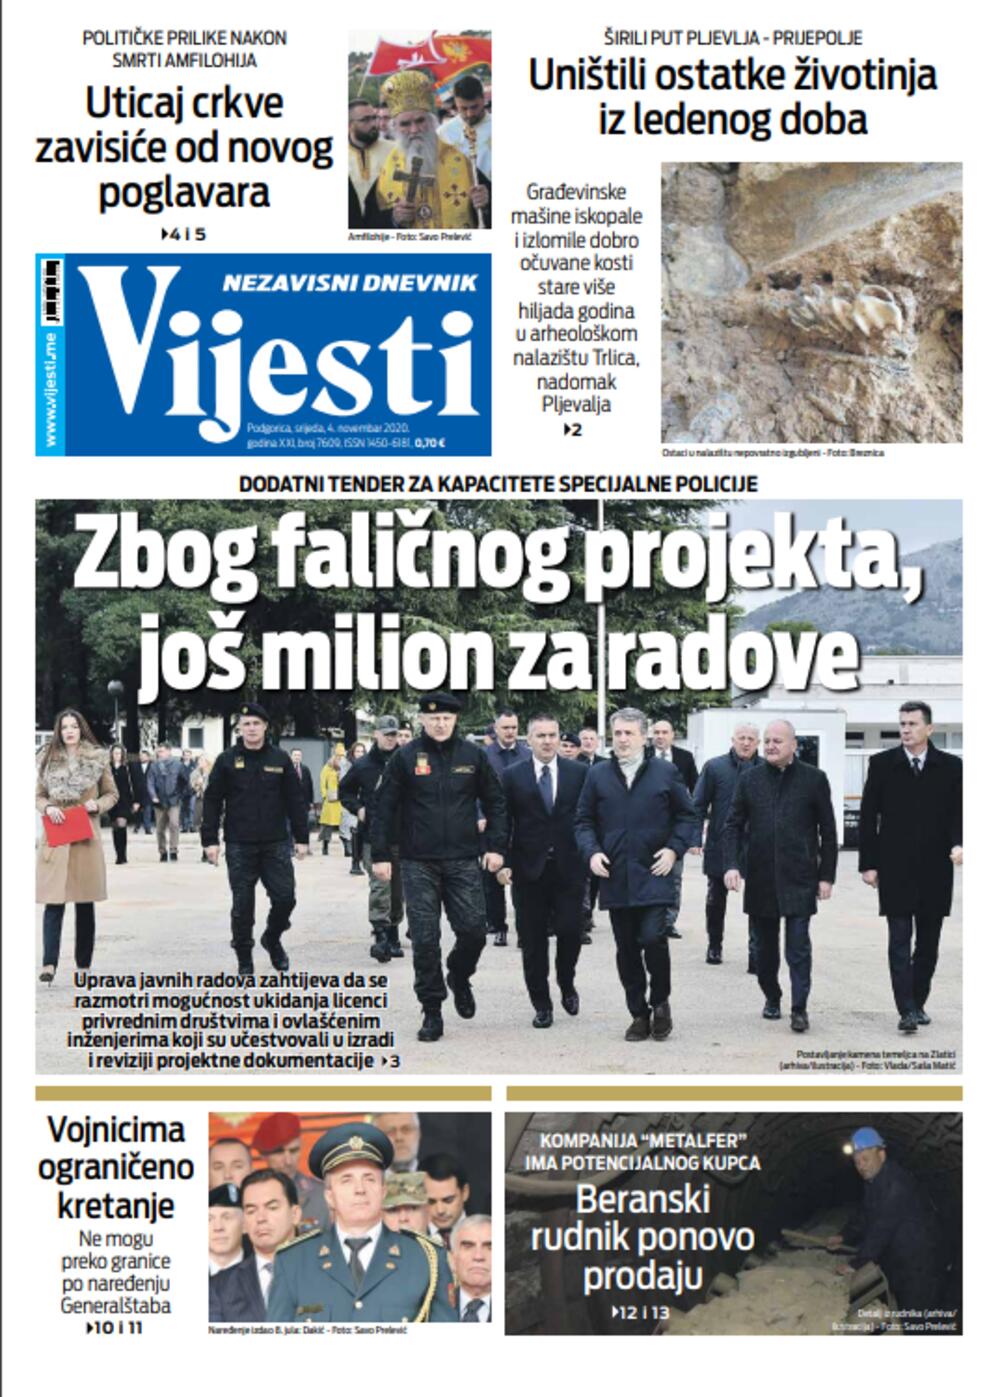 Naslovna strana "Vijesti" za četvrti novembar, Foto: Vijesti